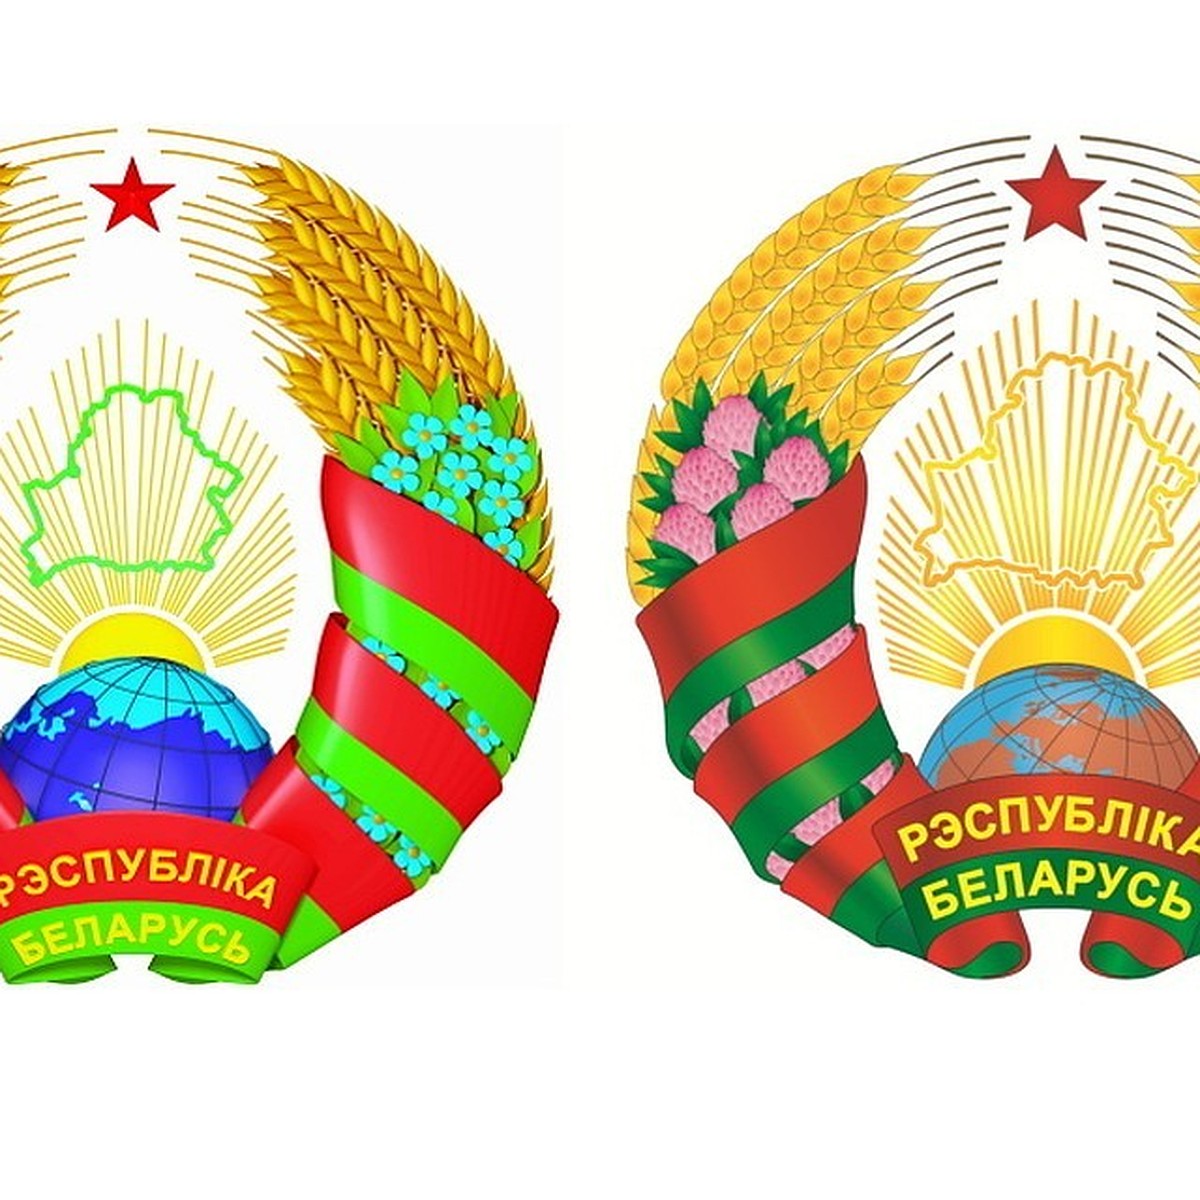 Герб белоруссии новый и старый фото